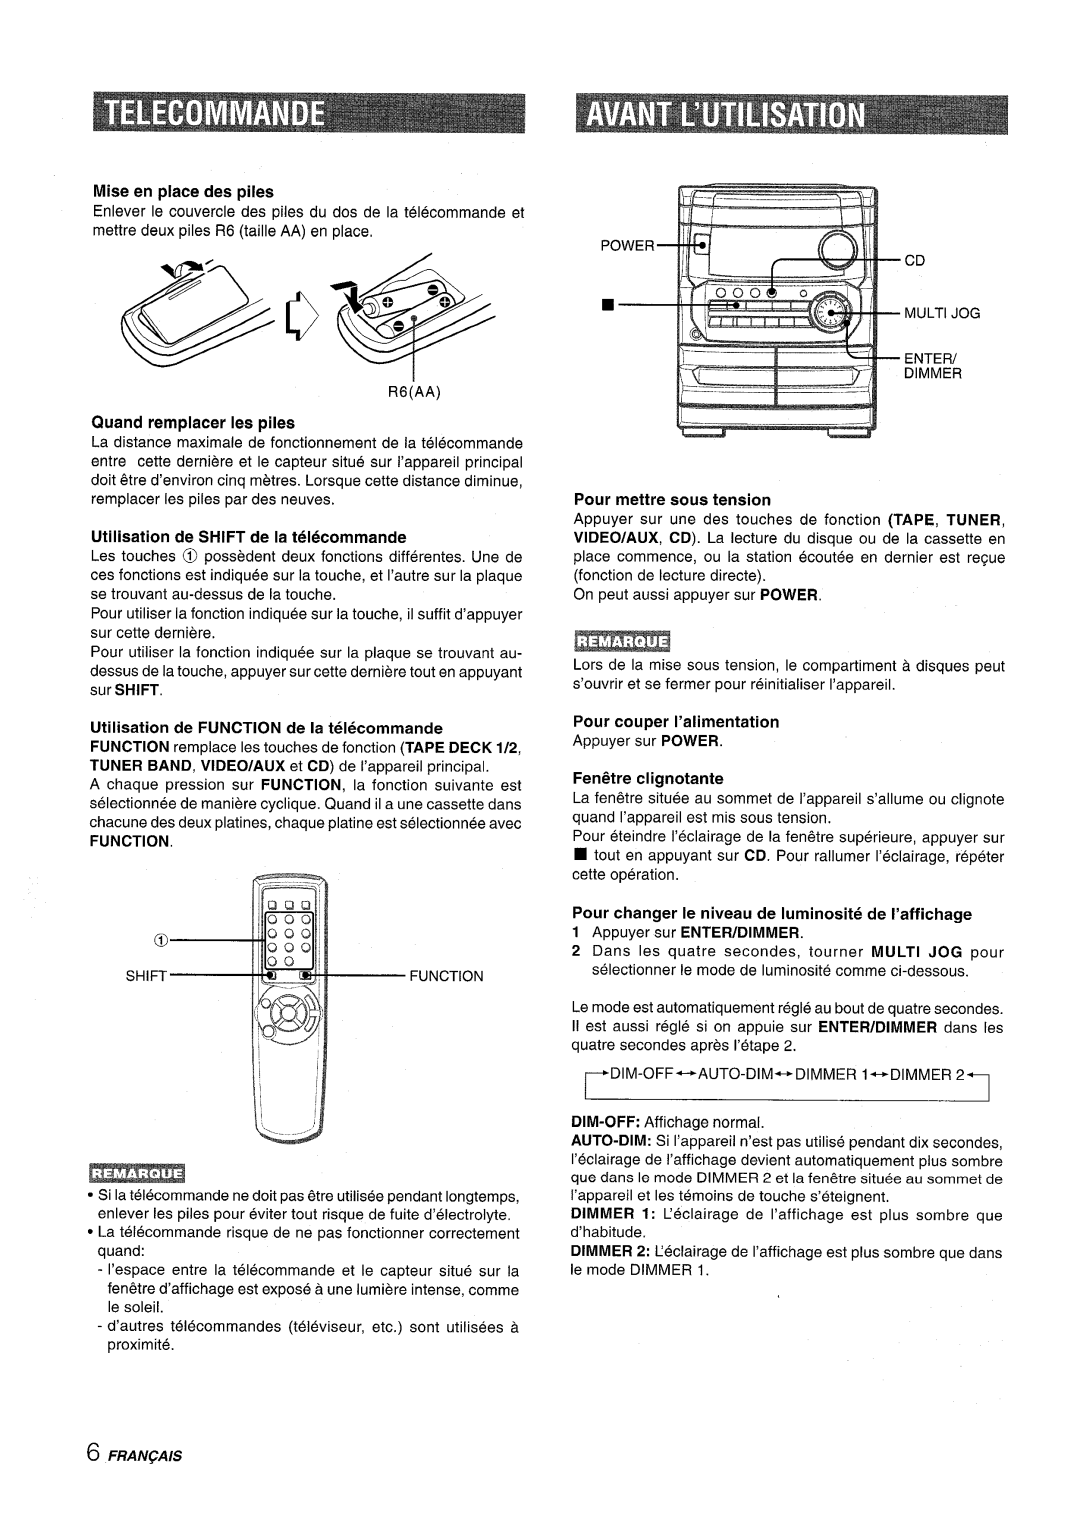 Aiwa CX-NA222 manual Mise en place des piles, Quand remplacer Ies piles, Utilisation de Shift de la telecommande 